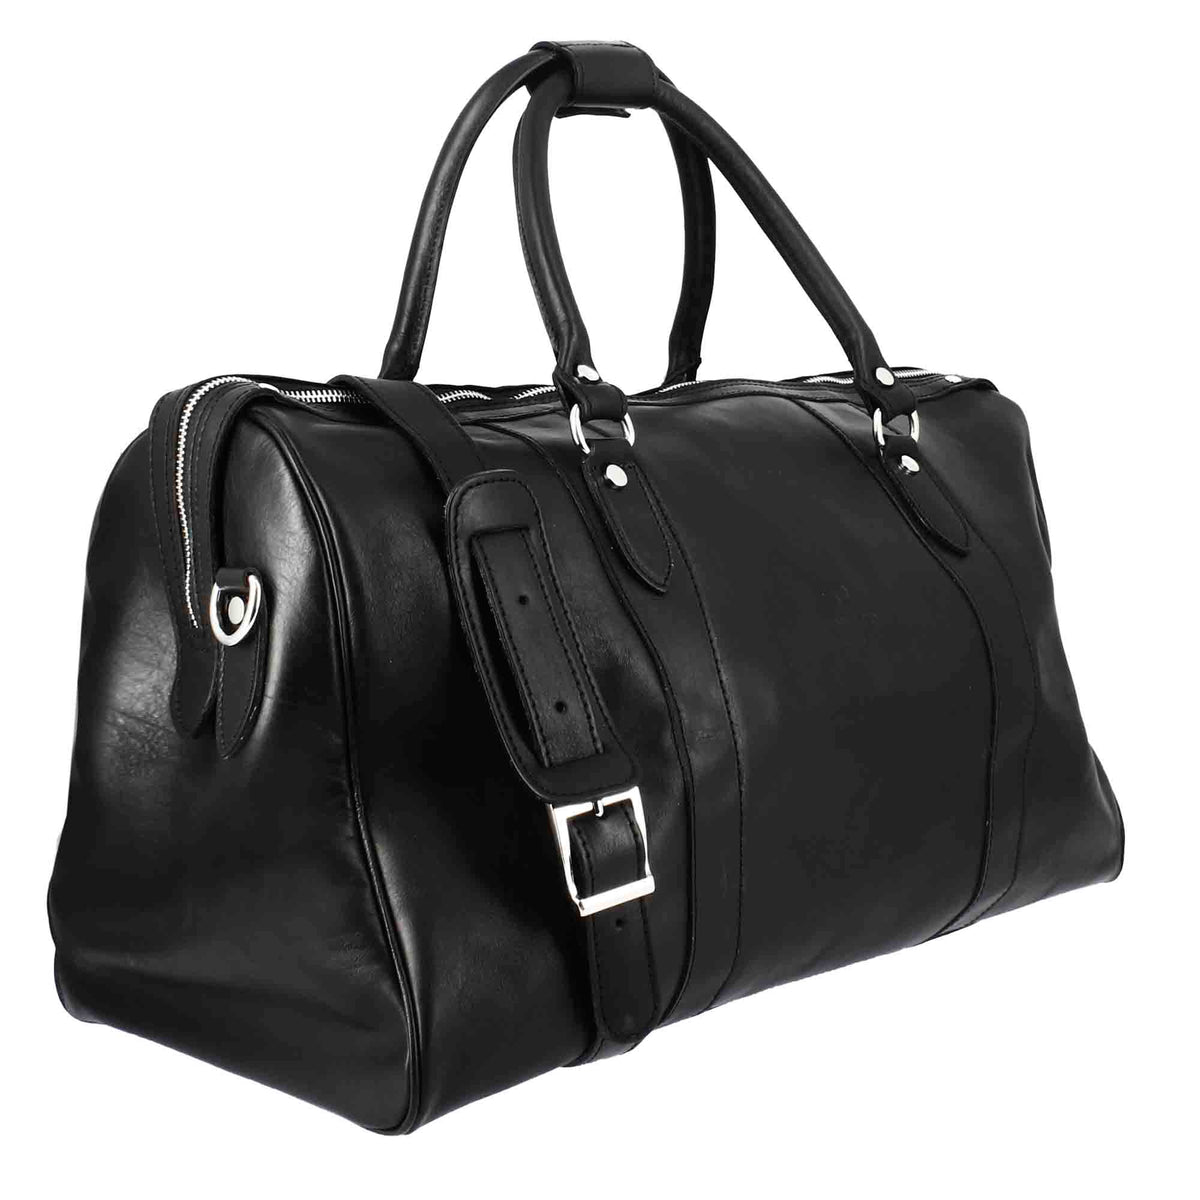 Black leather travel bag with shoulder strap